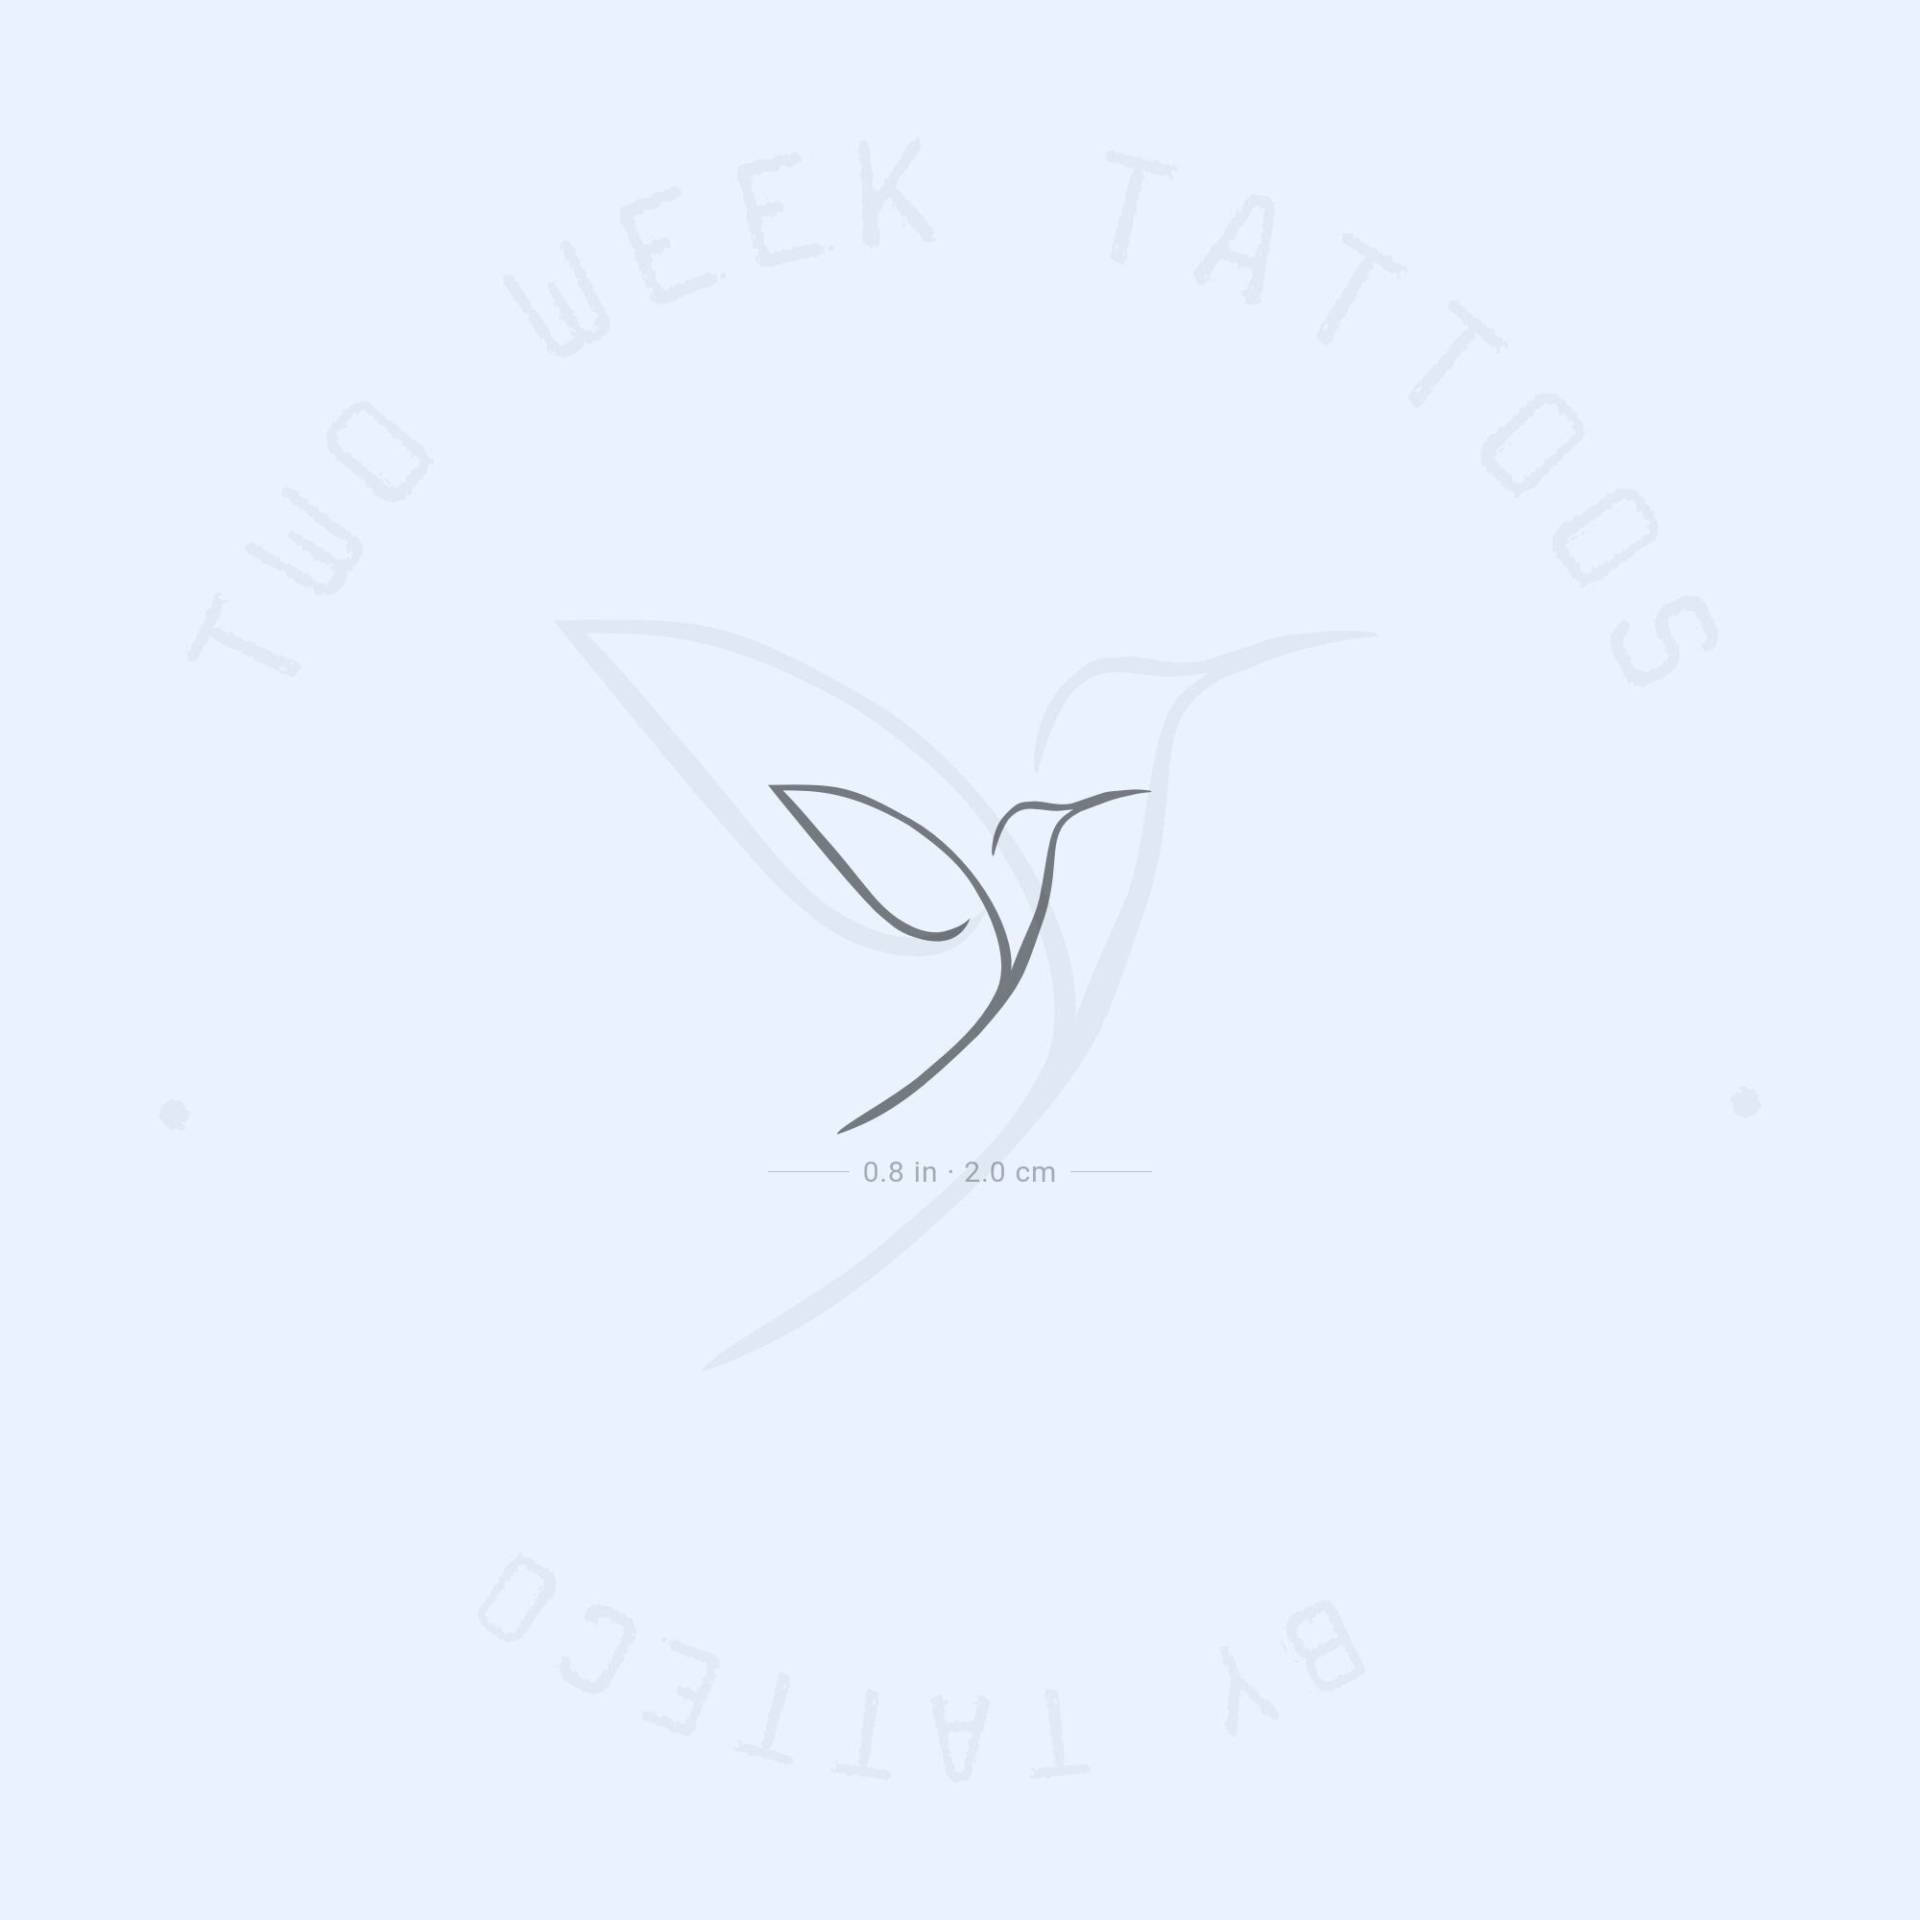 Kleiner Minimalist Kolibri Semi-Permanent Tattoo | 2Er Set von Etsy - twoweektattoos